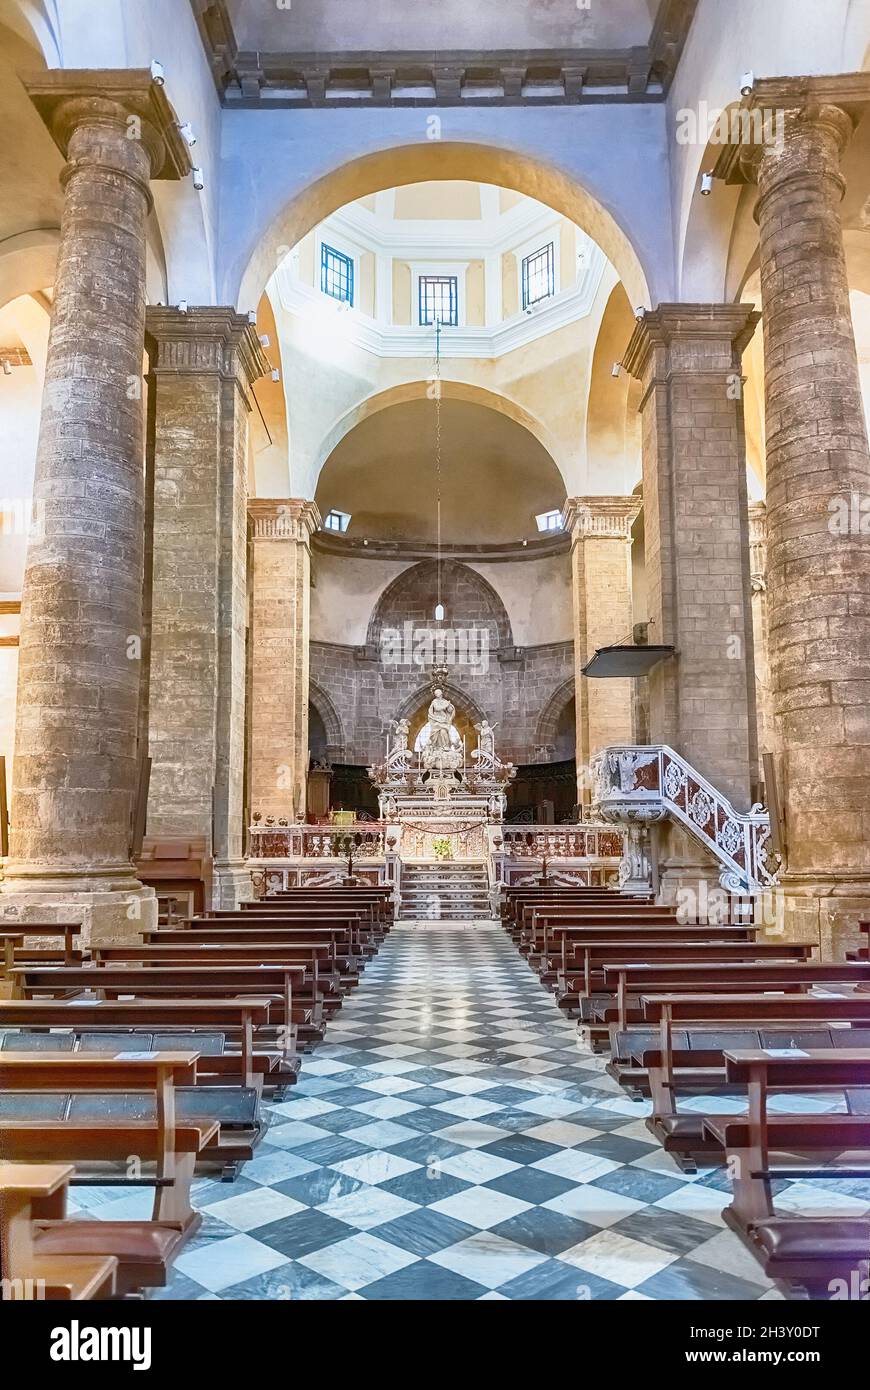 ALGHERO, ITALIE - AOÛT 6 : intérieur de la cathédrale Sainte-Marie l'Immaculée, principale église catholique romaine située dans le centre historique d'Alghero Banque D'Images